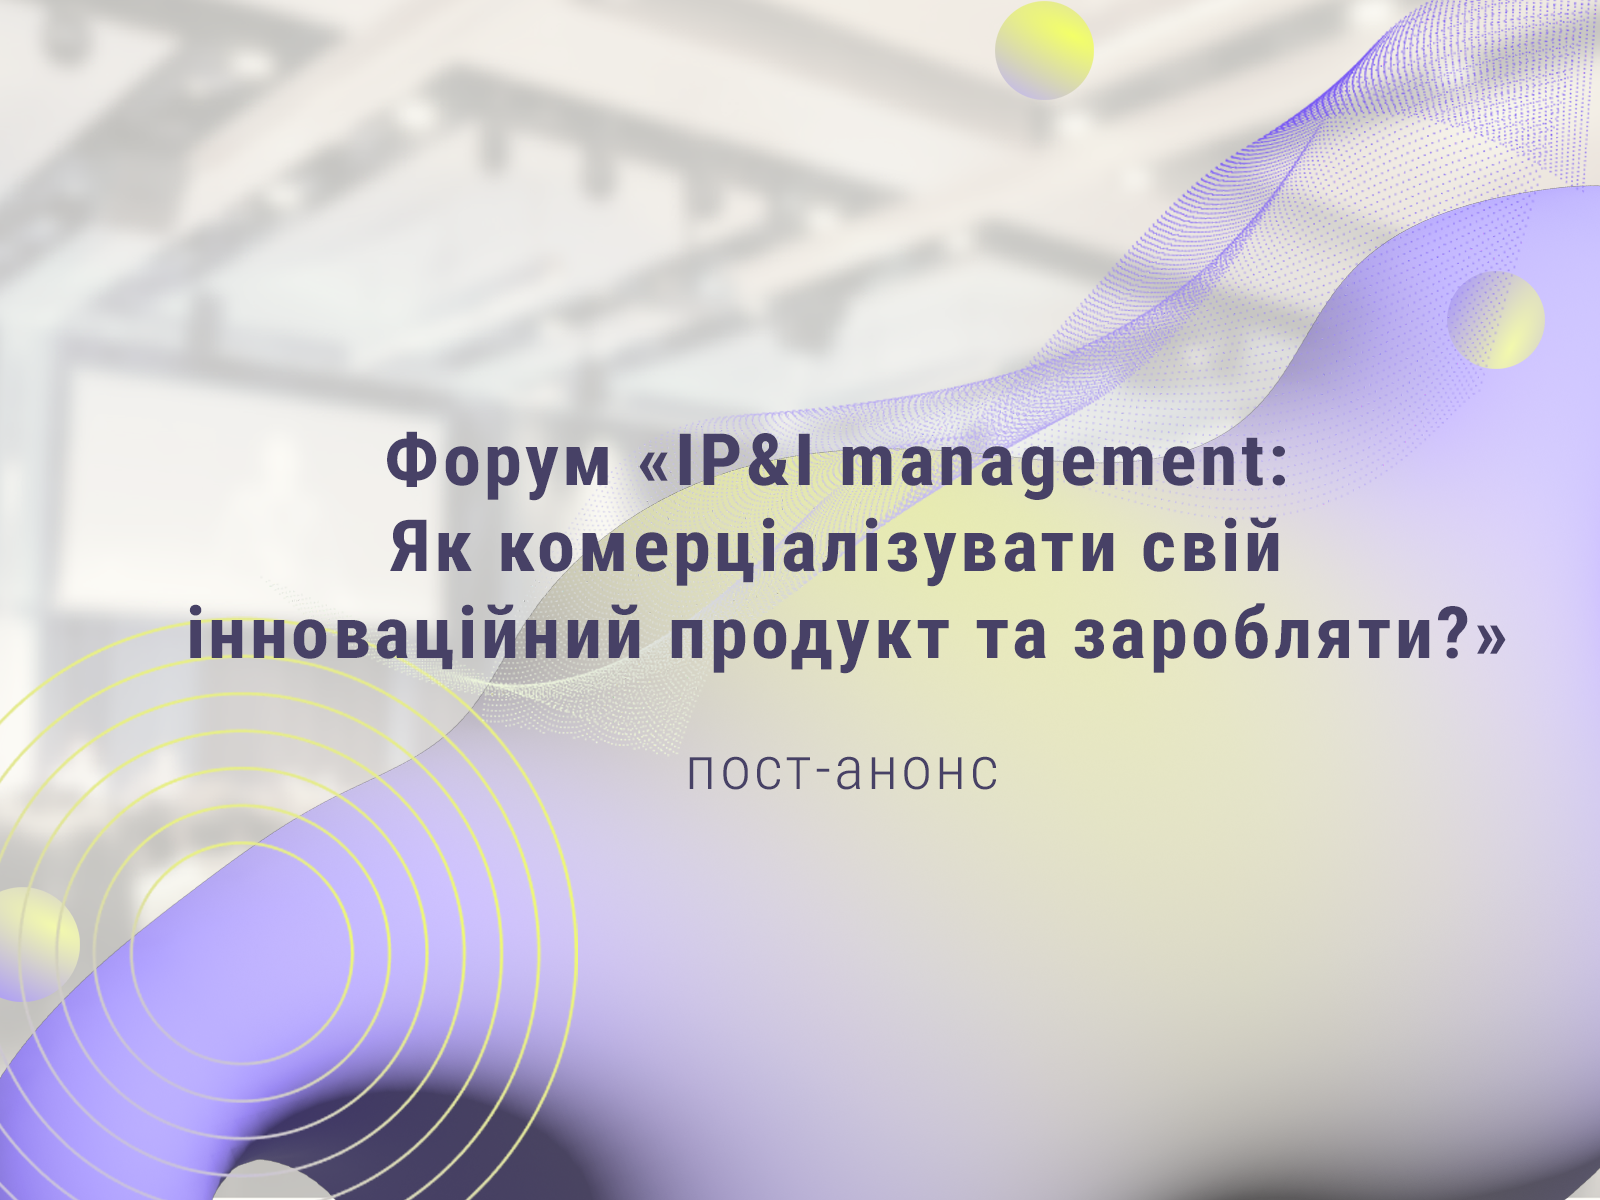 Пост-анонс форуму «IP&I management: Як комерціалізувати свій інноваційний продукт та заробляти?»